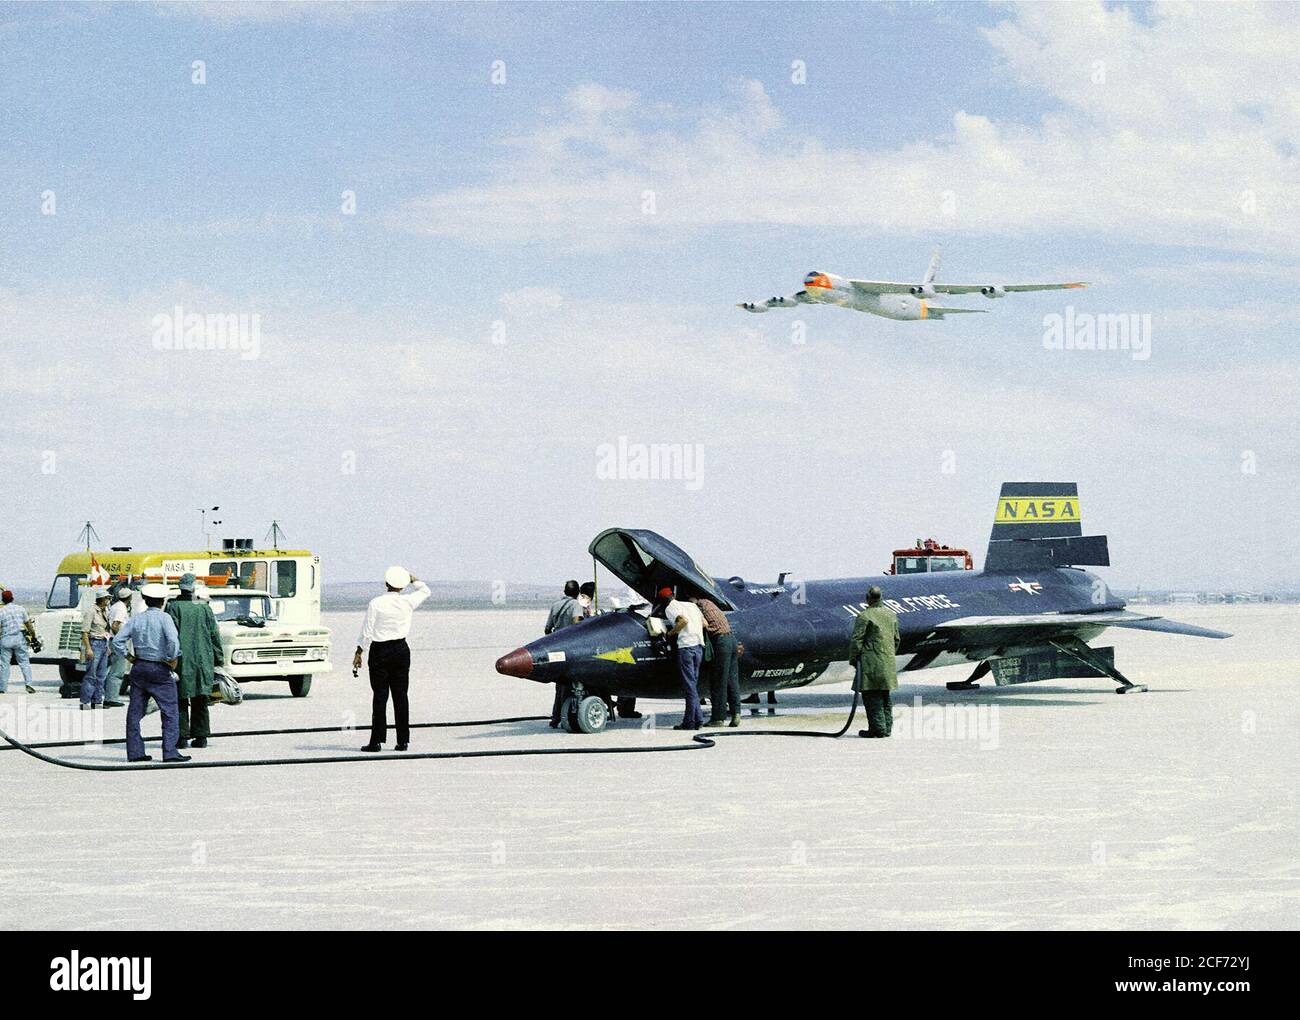 Comme les membres d'équipage sécurisent l'avion X-15 propulsé par une fusée après un vol de recherche, la mère B-52 utilisée pour lancer cet avion unique fait un faible survol. Les X-15 ont effectué un total de 199 vols sur une période de près de 10 ans de 1959 à 1968 et ont établi des records non officiels de vitesse et d'altitude mondiales de 4 520 mph (Mach 6.7) et de 354 200 pieds. L'information obtenue grâce au programme X-15 très fructueux a contribué à l'élaboration des programmes de vol spatial pilotés Mercure, Gemini et Apollo, ainsi qu'au programme de navette spatiale. Banque D'Images